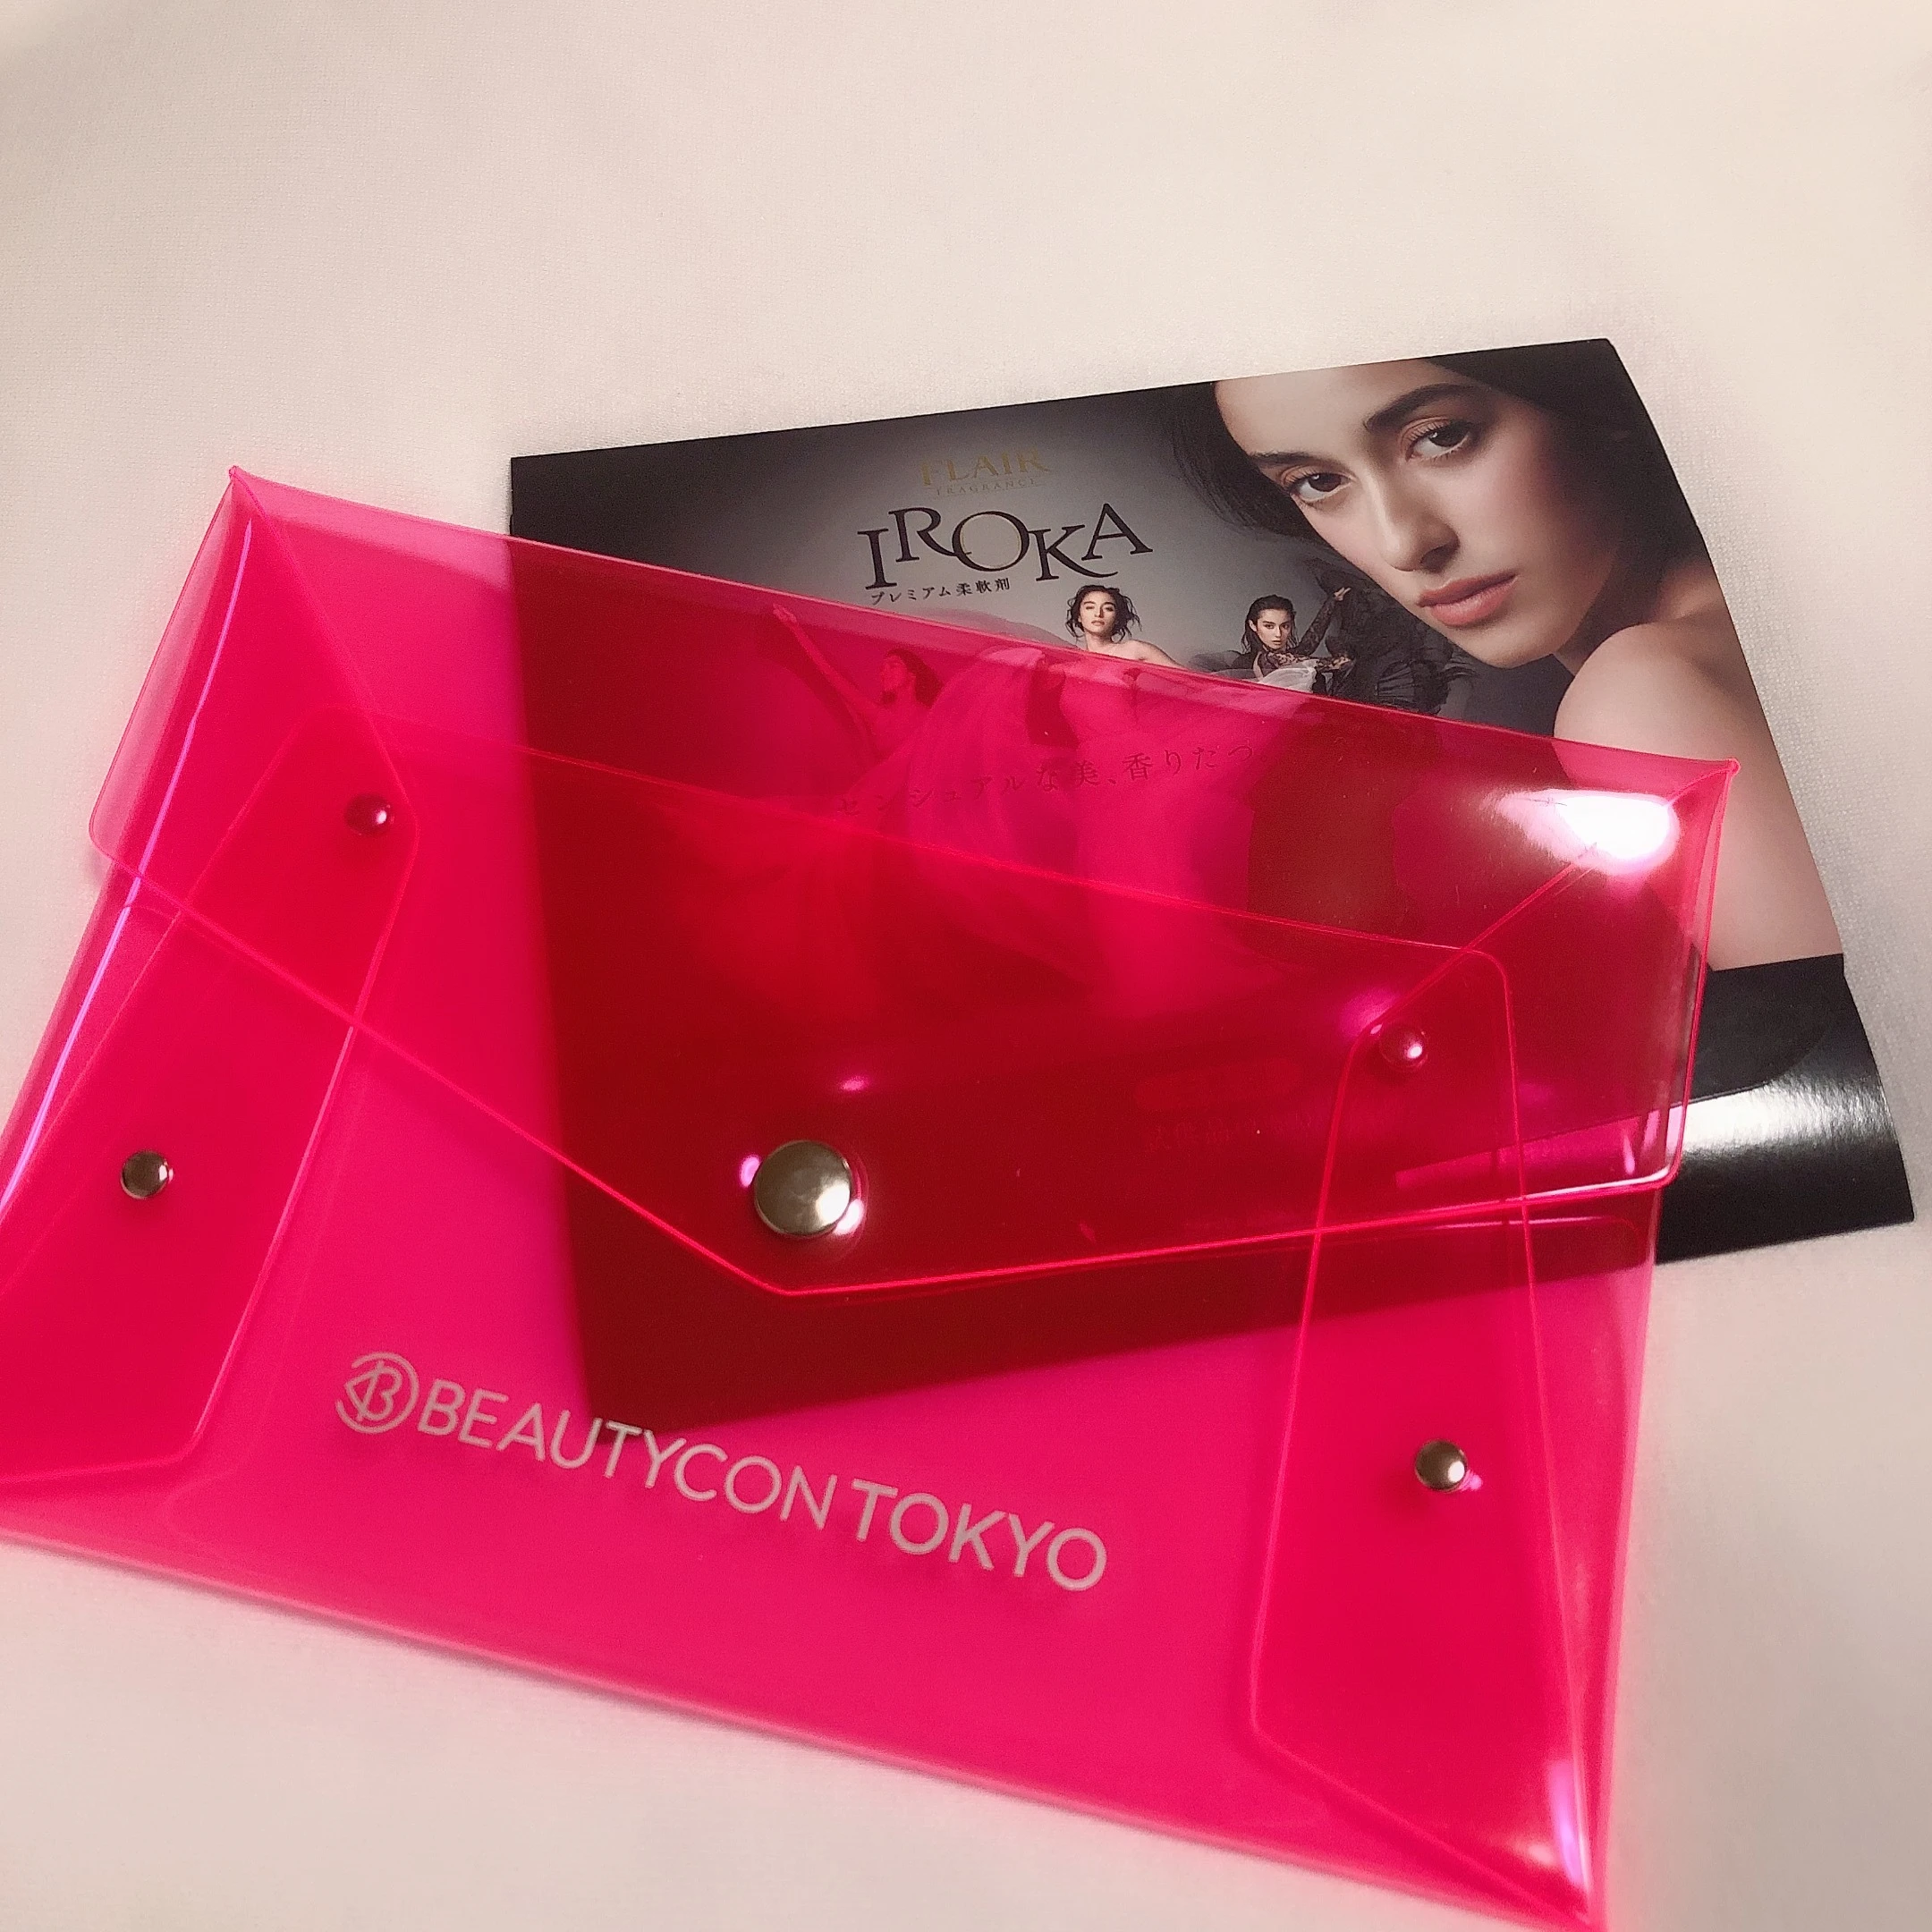 【日本初上陸】世界で人気の美容フェス『Beautycon Tokyo』_1_6-4